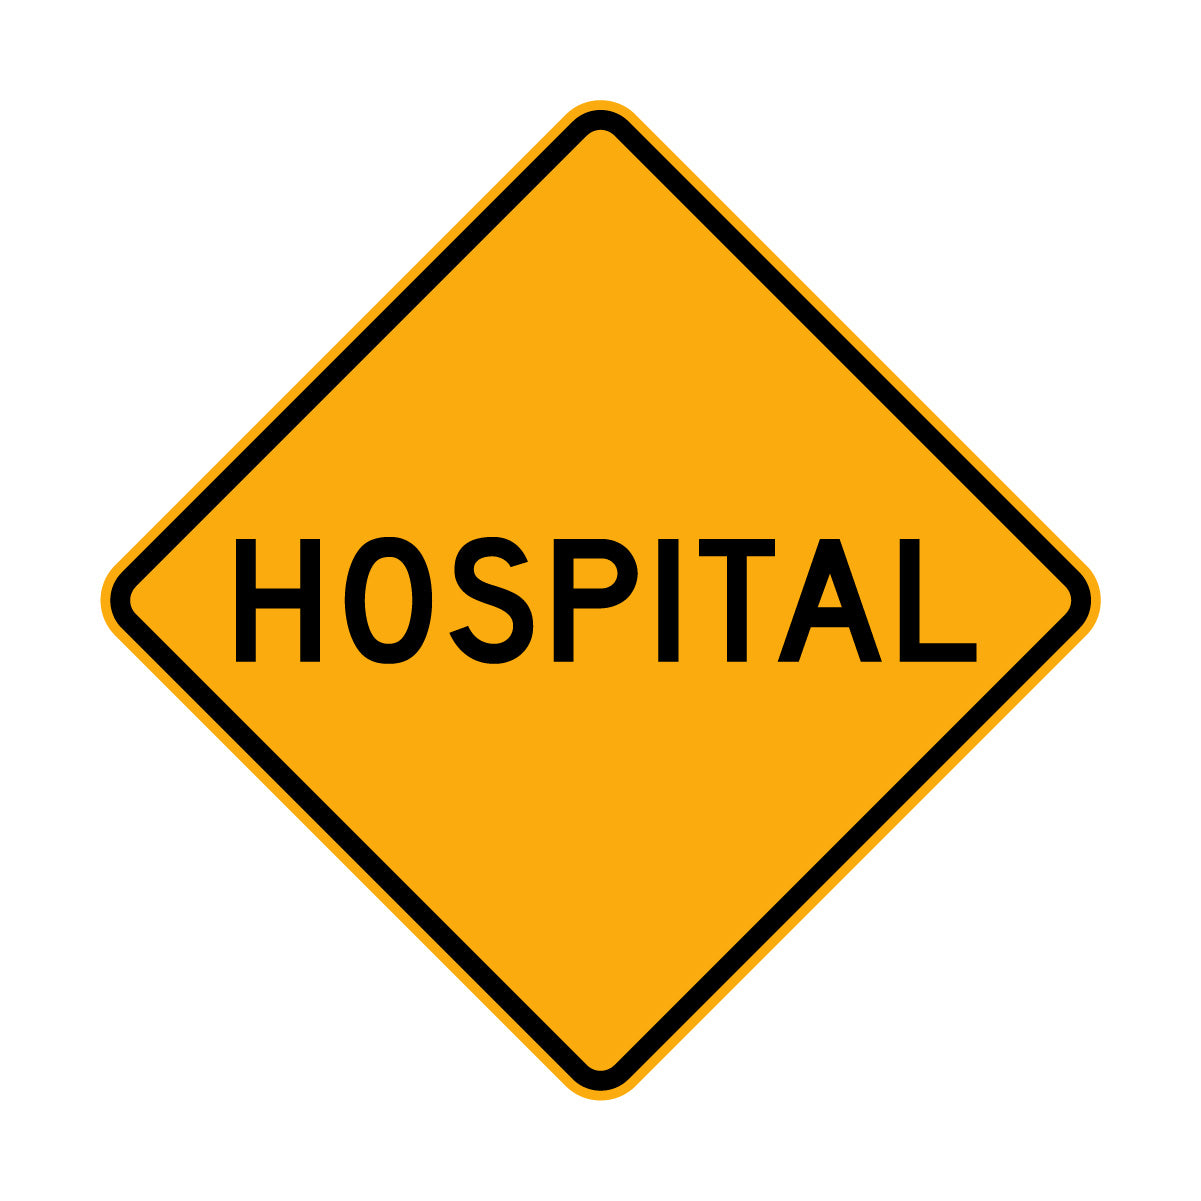 Warning: Hospital Ahead Sign